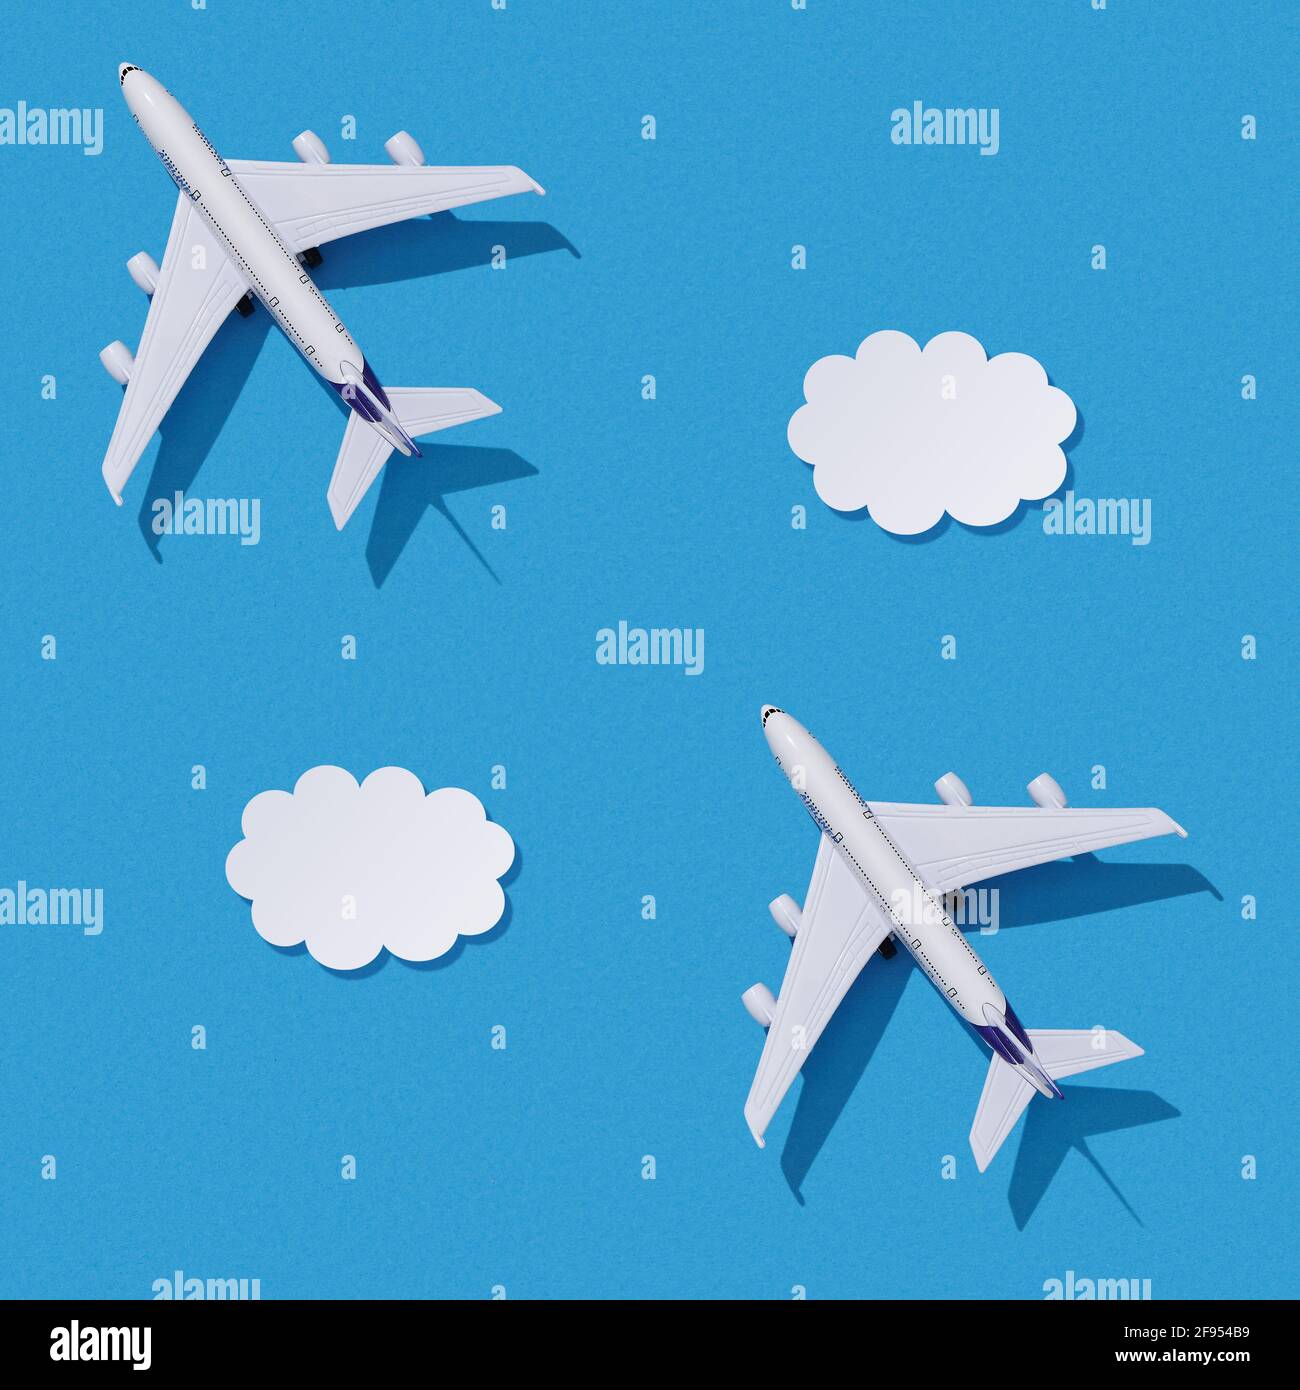 Aeroplano giocattolo in miniatura su sfondo di carta colorato. Design piatto del concetto di viaggio con aereo e nuvole su cielo blu. Texture senza cuciture. Foto Stock